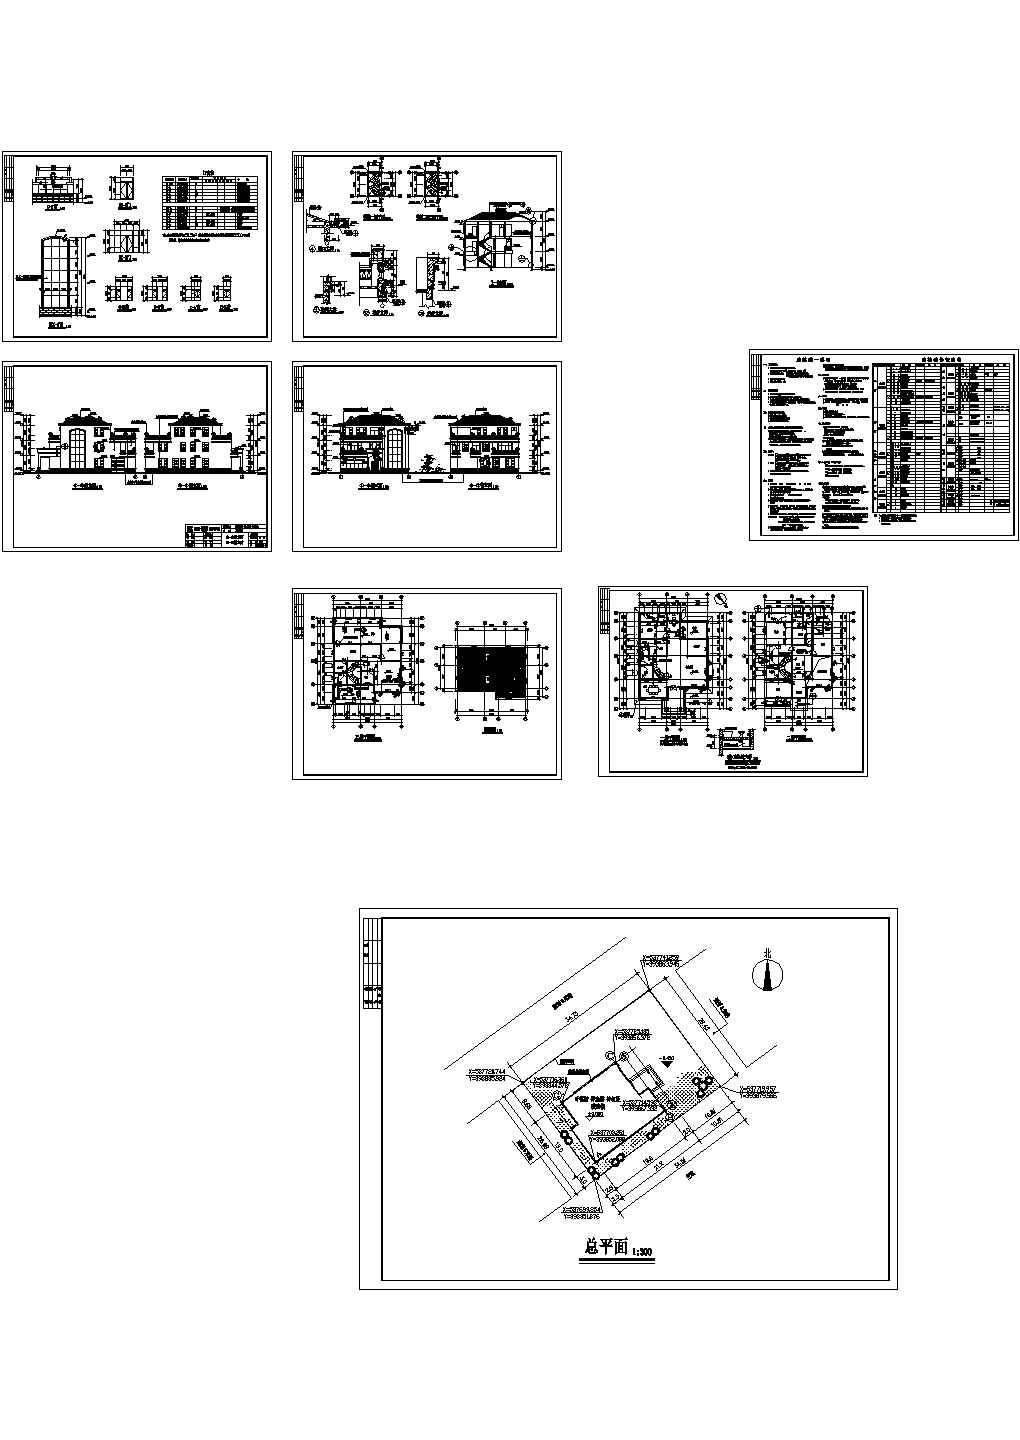 696平方米三层别墅建筑设计施工图